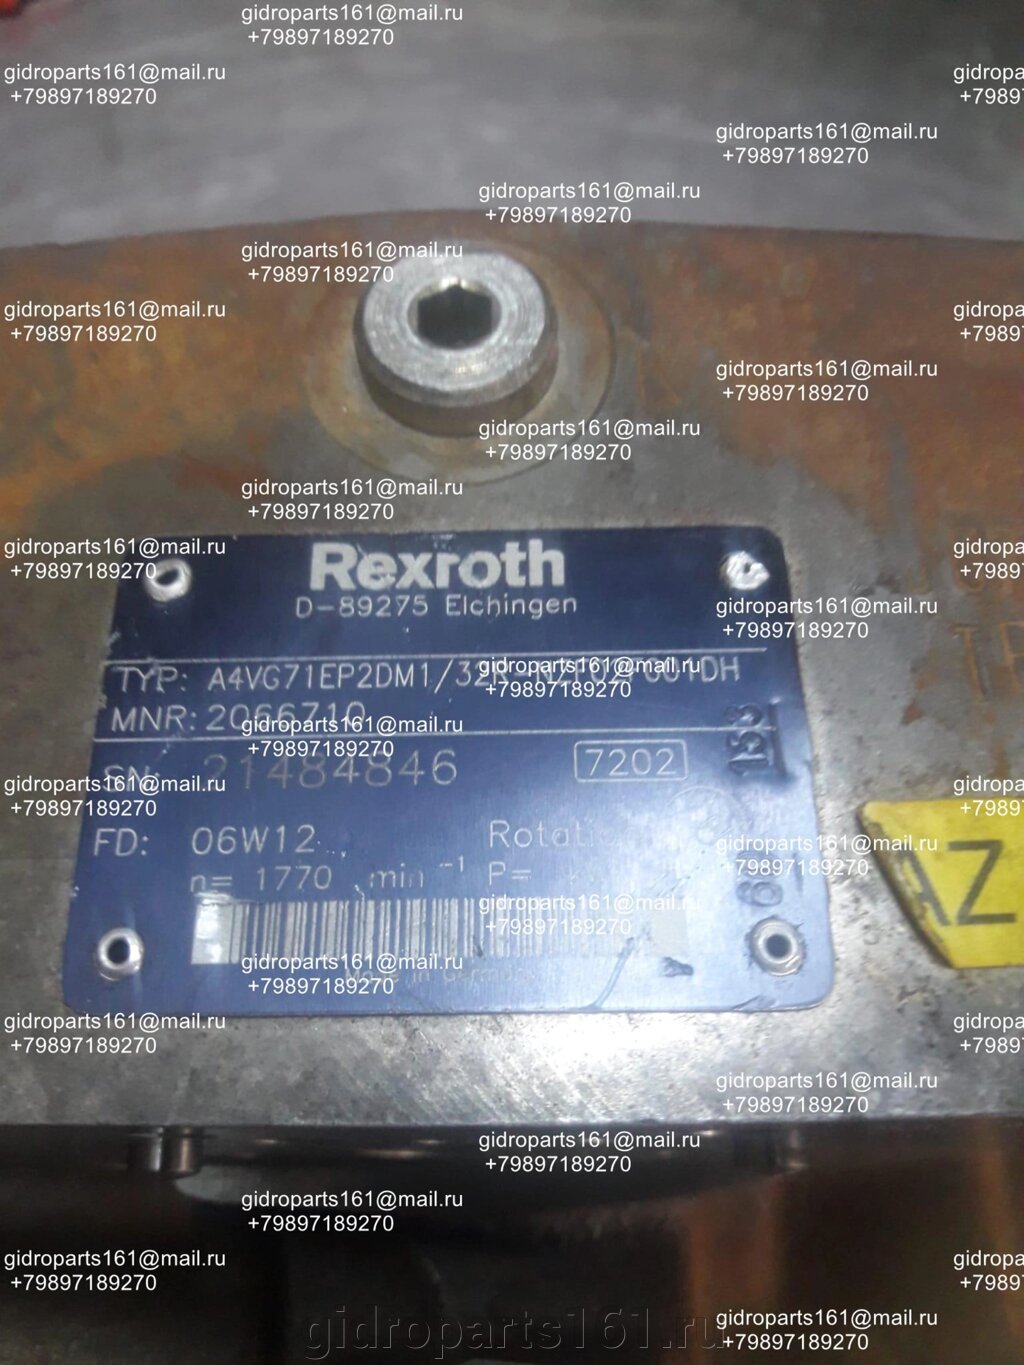 Гидронасос Rexroth A4VG71EP2DM1/32R-NZF02F001DH от компании Гидравлические запчасти 161 - фото 1